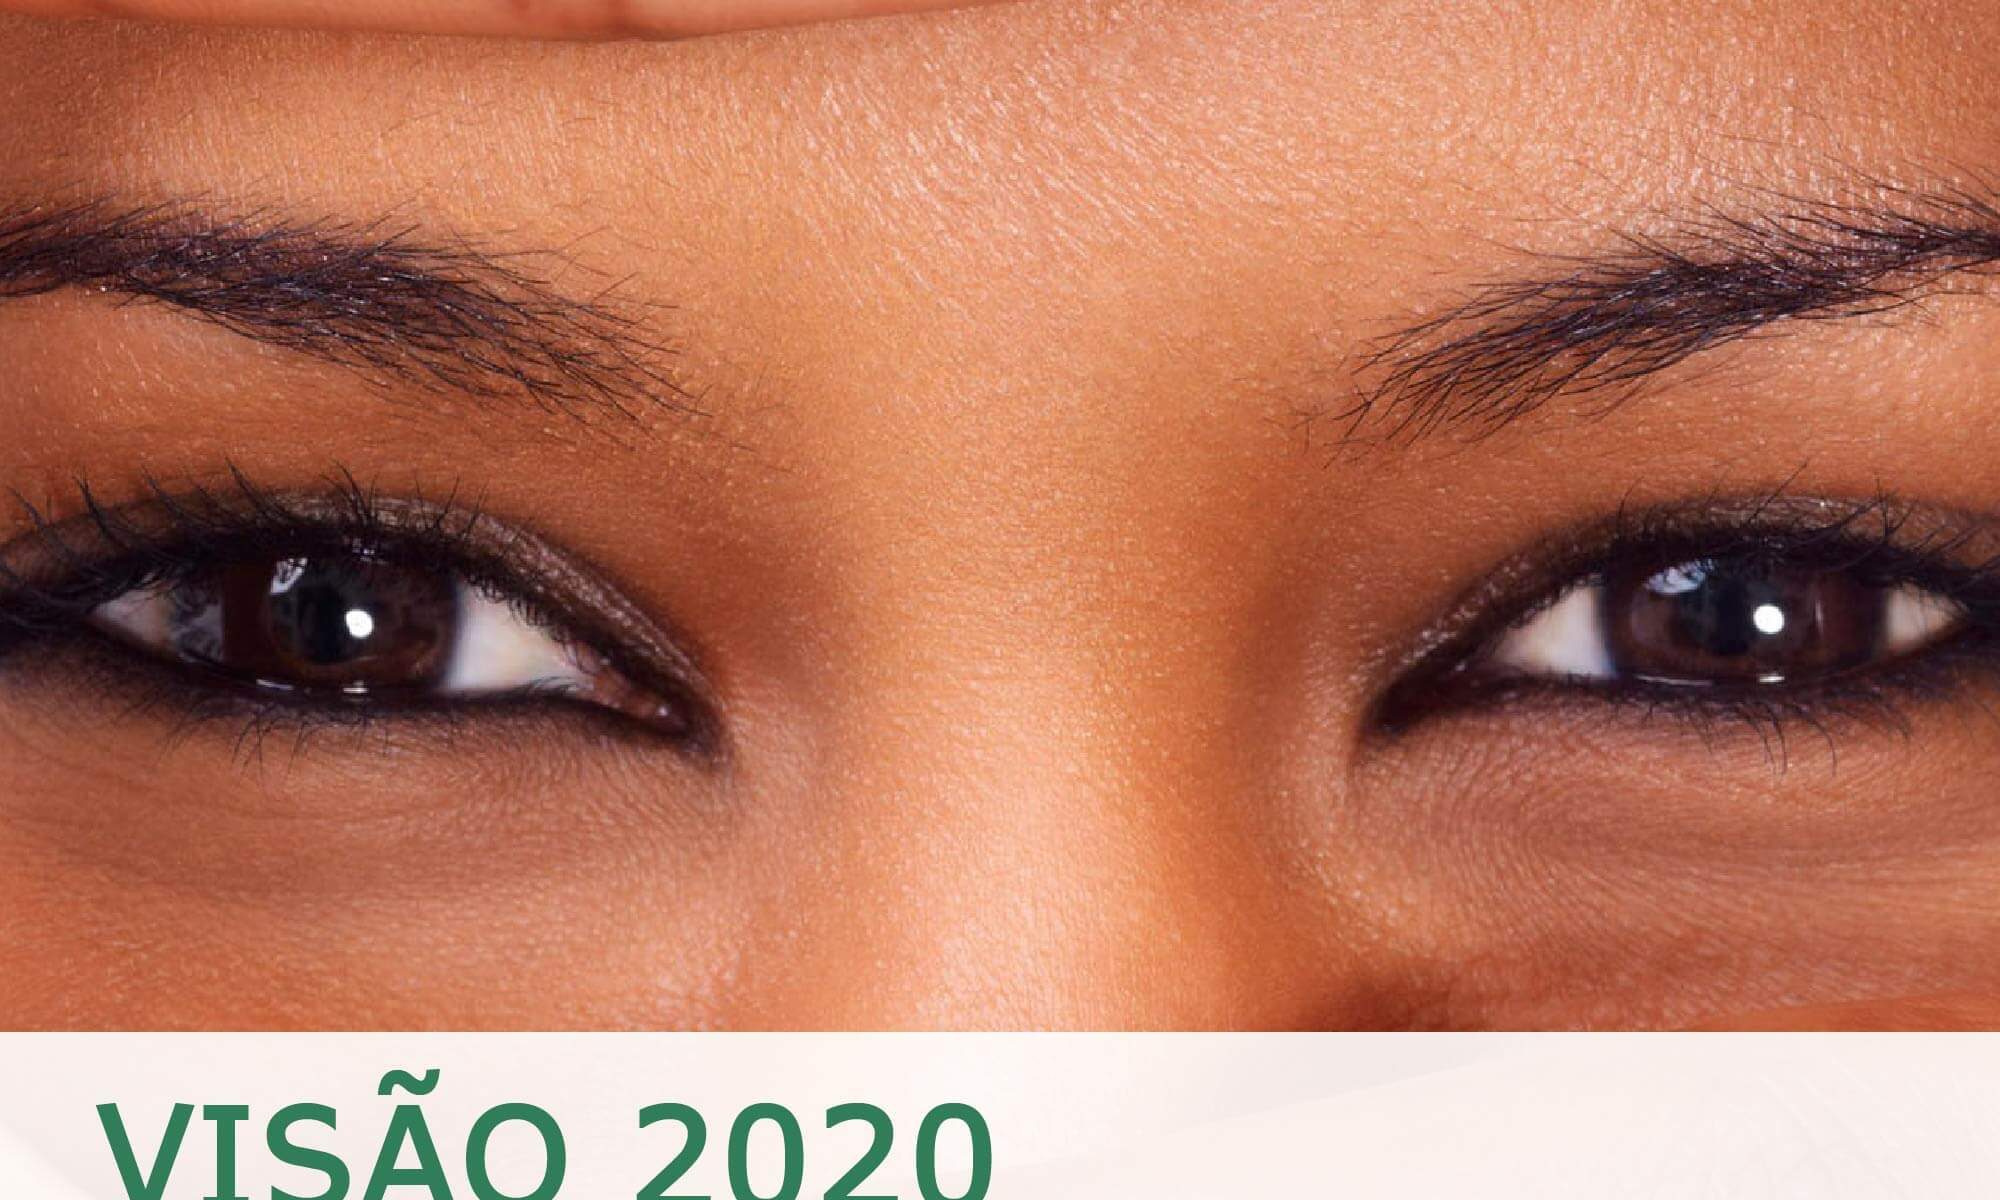 #decriçãodaimagem foto dos olhos de uma mulher. Está escrito "Visão 2020 Dia Mundial da Visão" Há as logos da Retina Brasil e da Novartis.